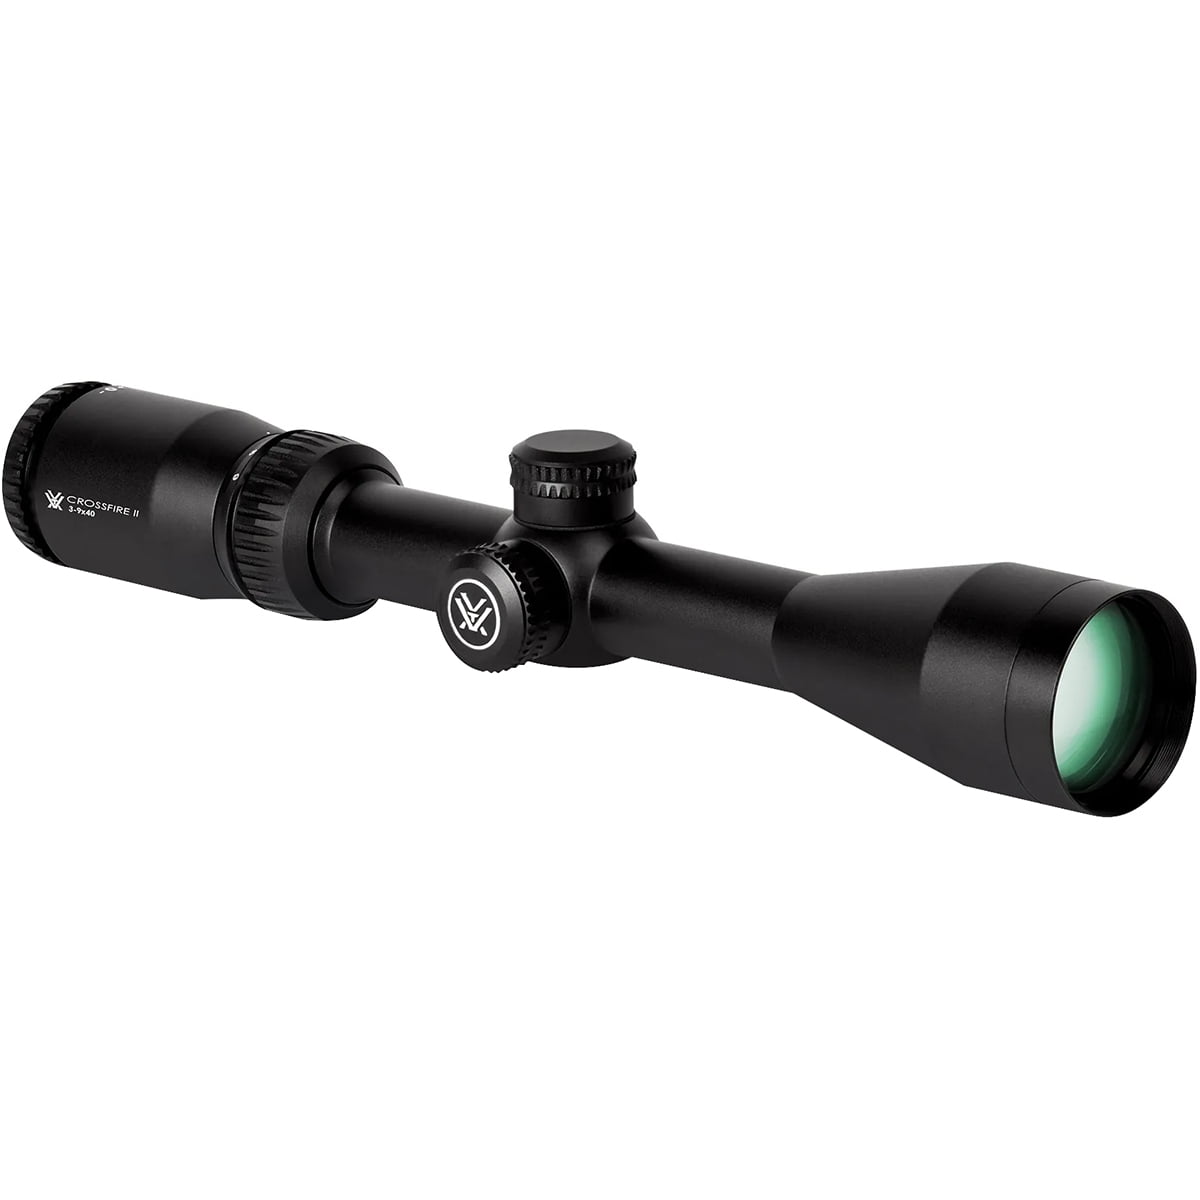 Illuminated reticle tactical shockproof scope 1-4x20 Rifle scope inc mounts 